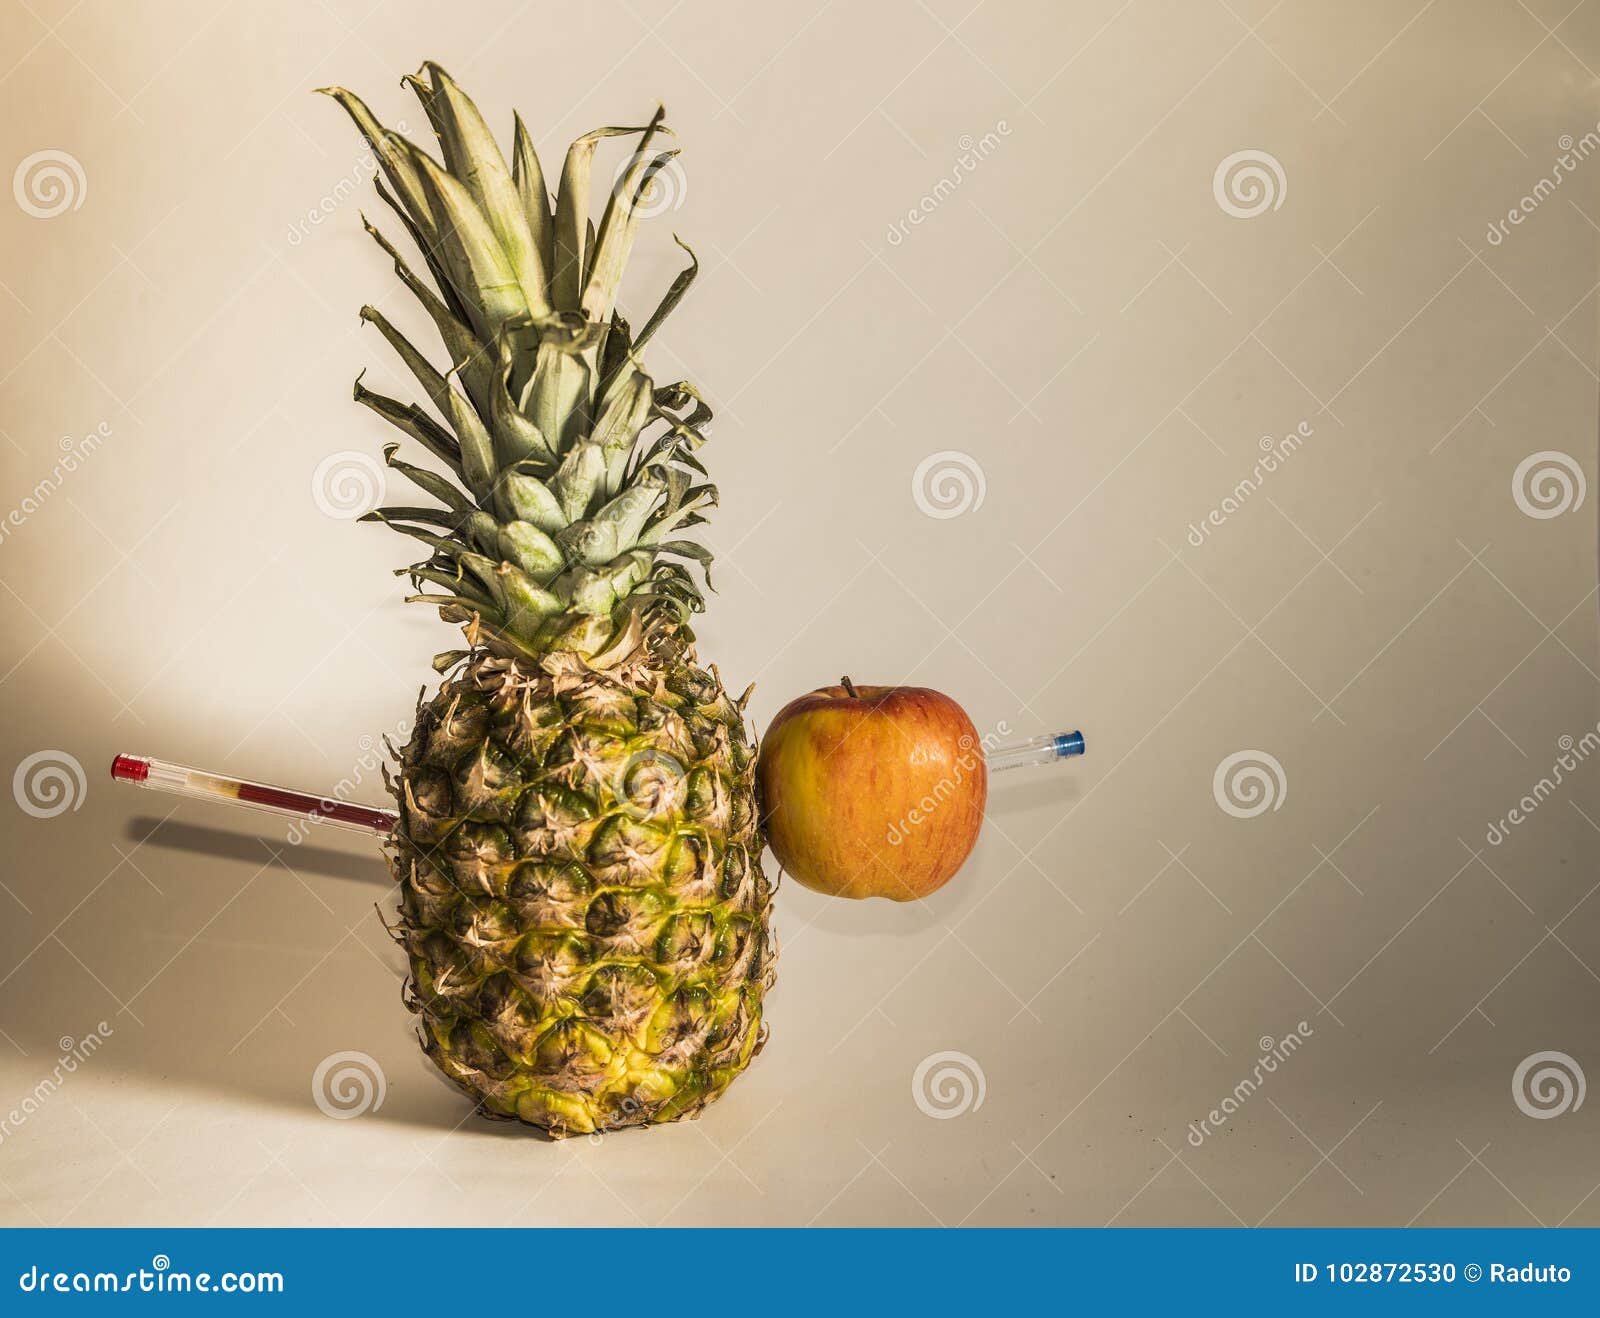 Pineapple apple pen